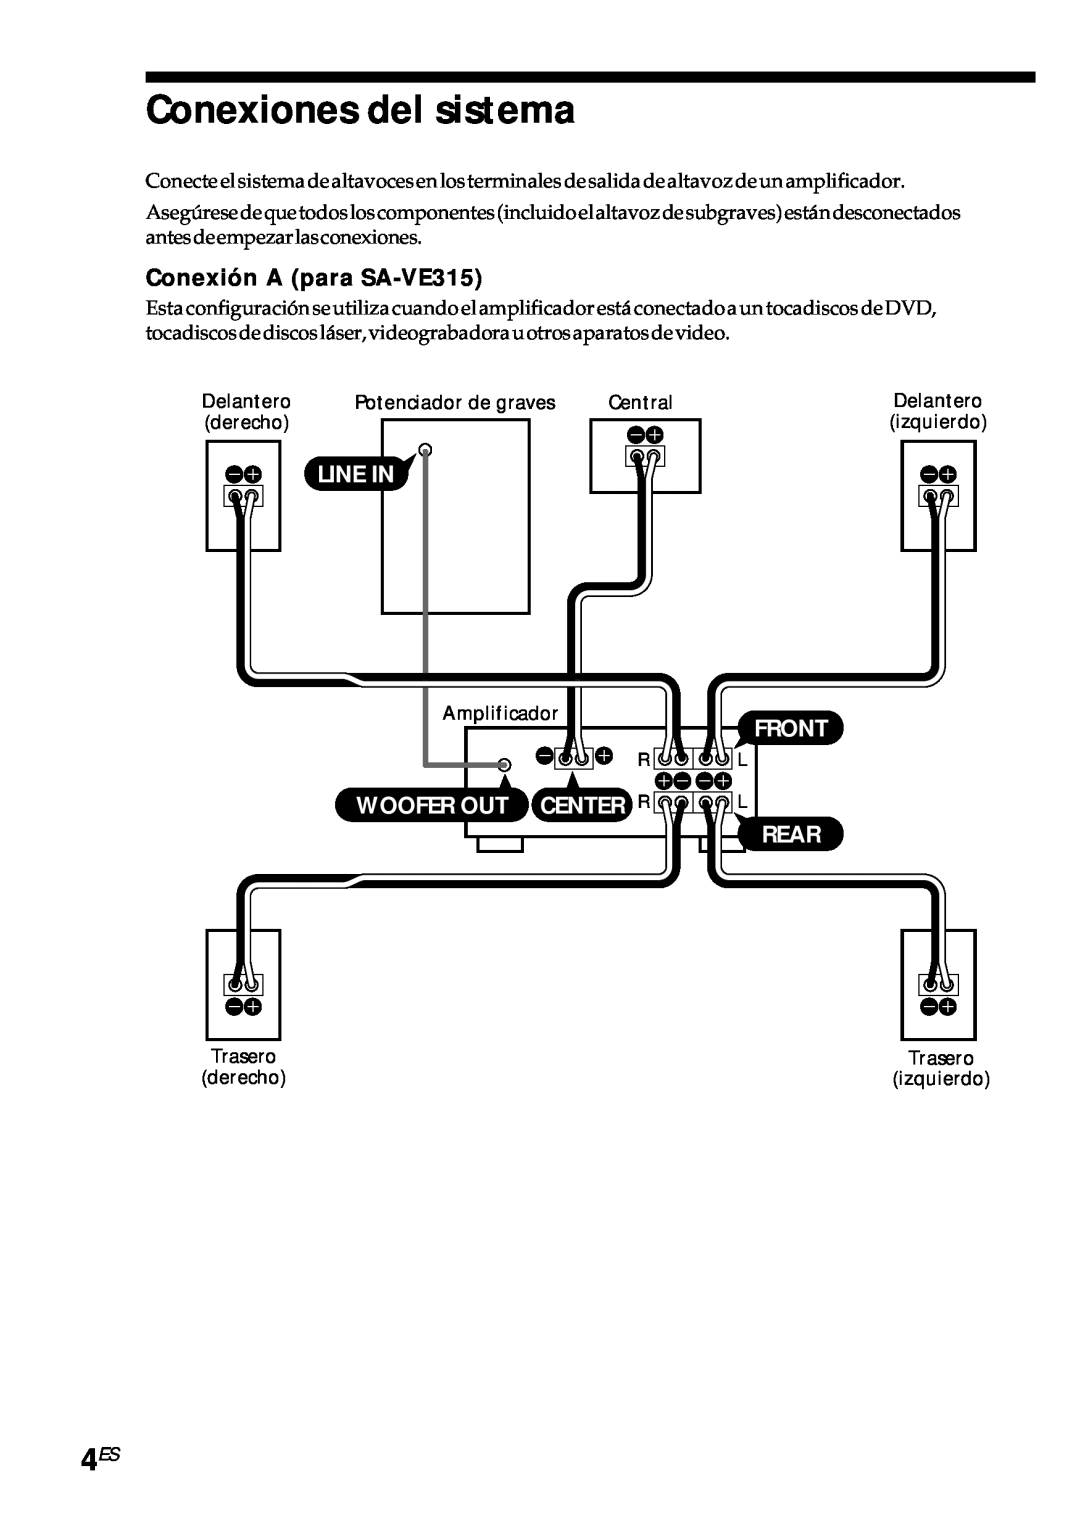 Sony SA-VE312 manual Conexiones del sistema, Conexión A para SA-VE315, Line In, Front, Woofer Out Center R, Rear, Ee Ee 